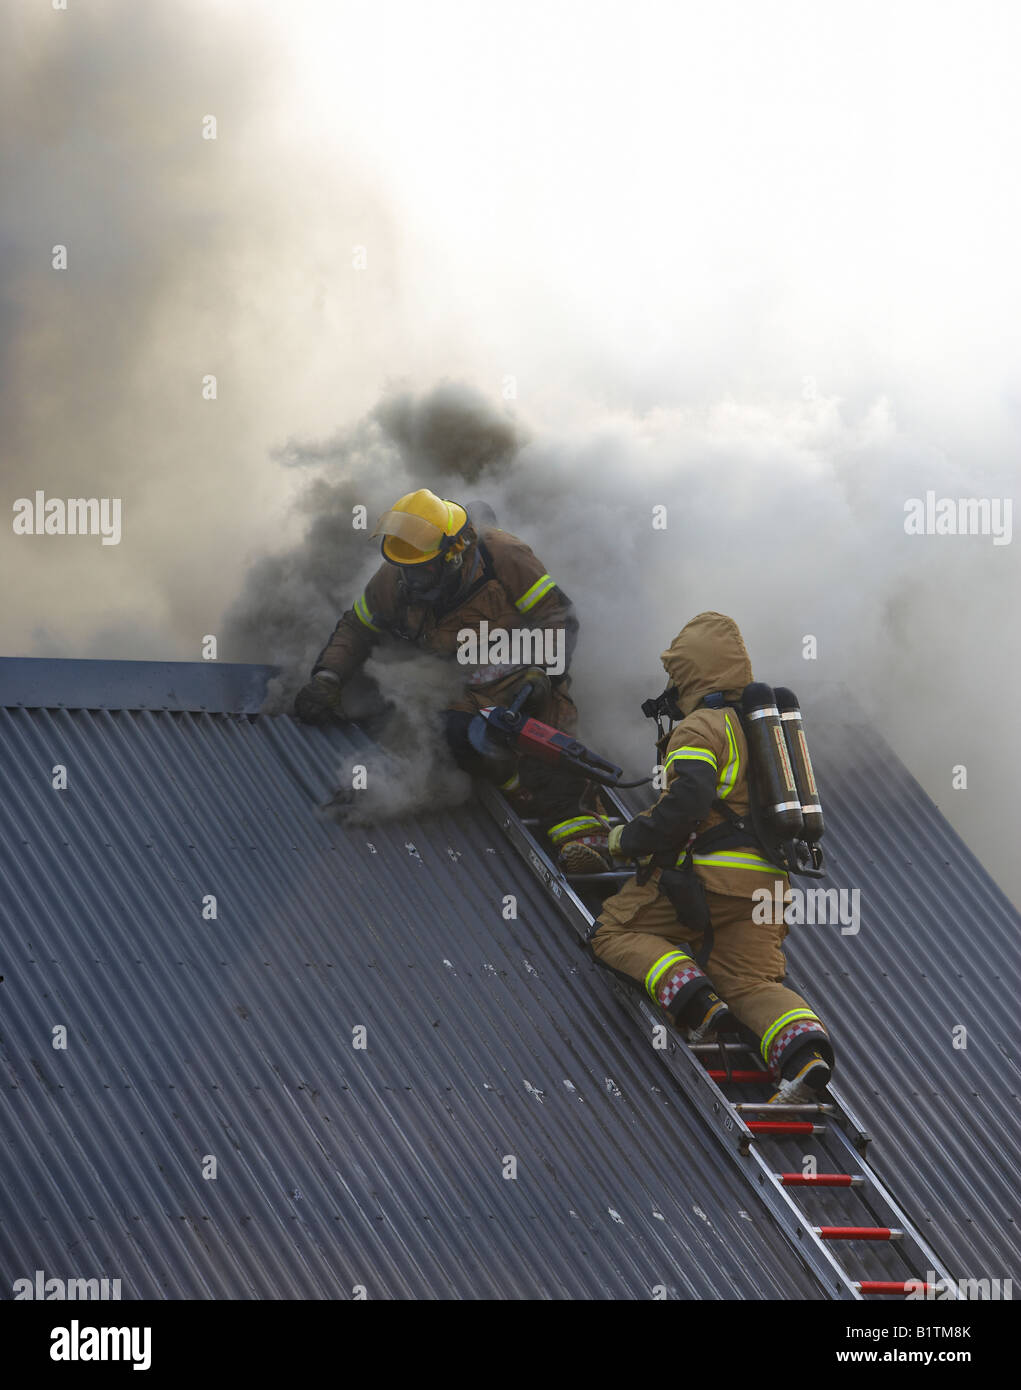 Les pompiers sur le toit, Reykjavik Islande Banque D'Images